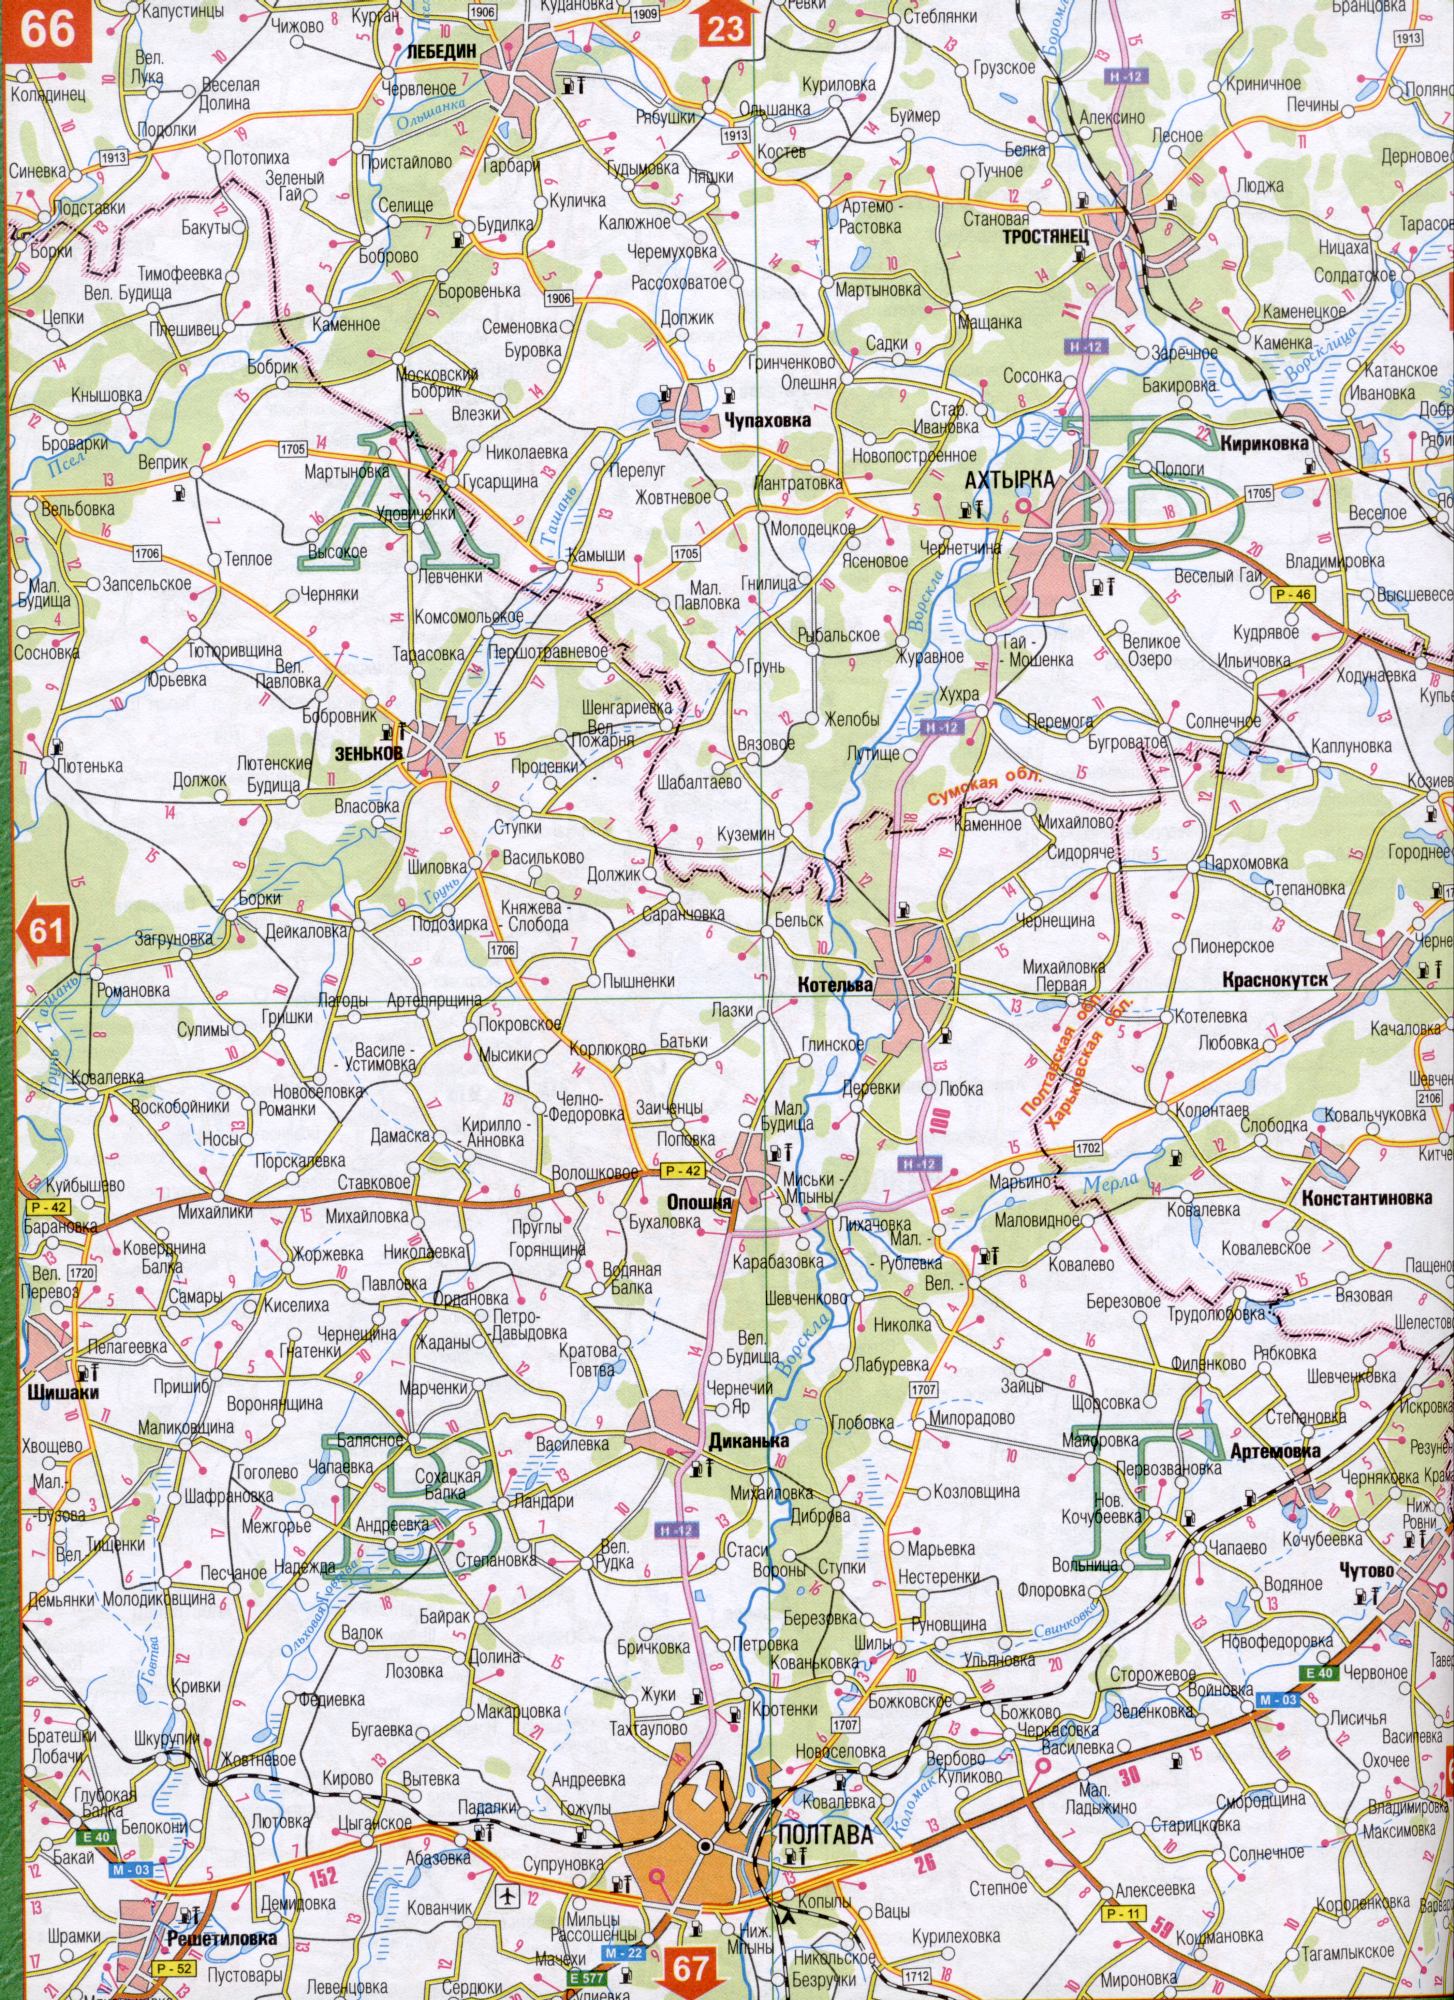 Karte von Poltawa Region der Ukraine (regionales Zentrum von Poltawa). Laden Sie eine detaillierte Karte, B0 - Tashan, Nitsaha, Samara, Buhalovka